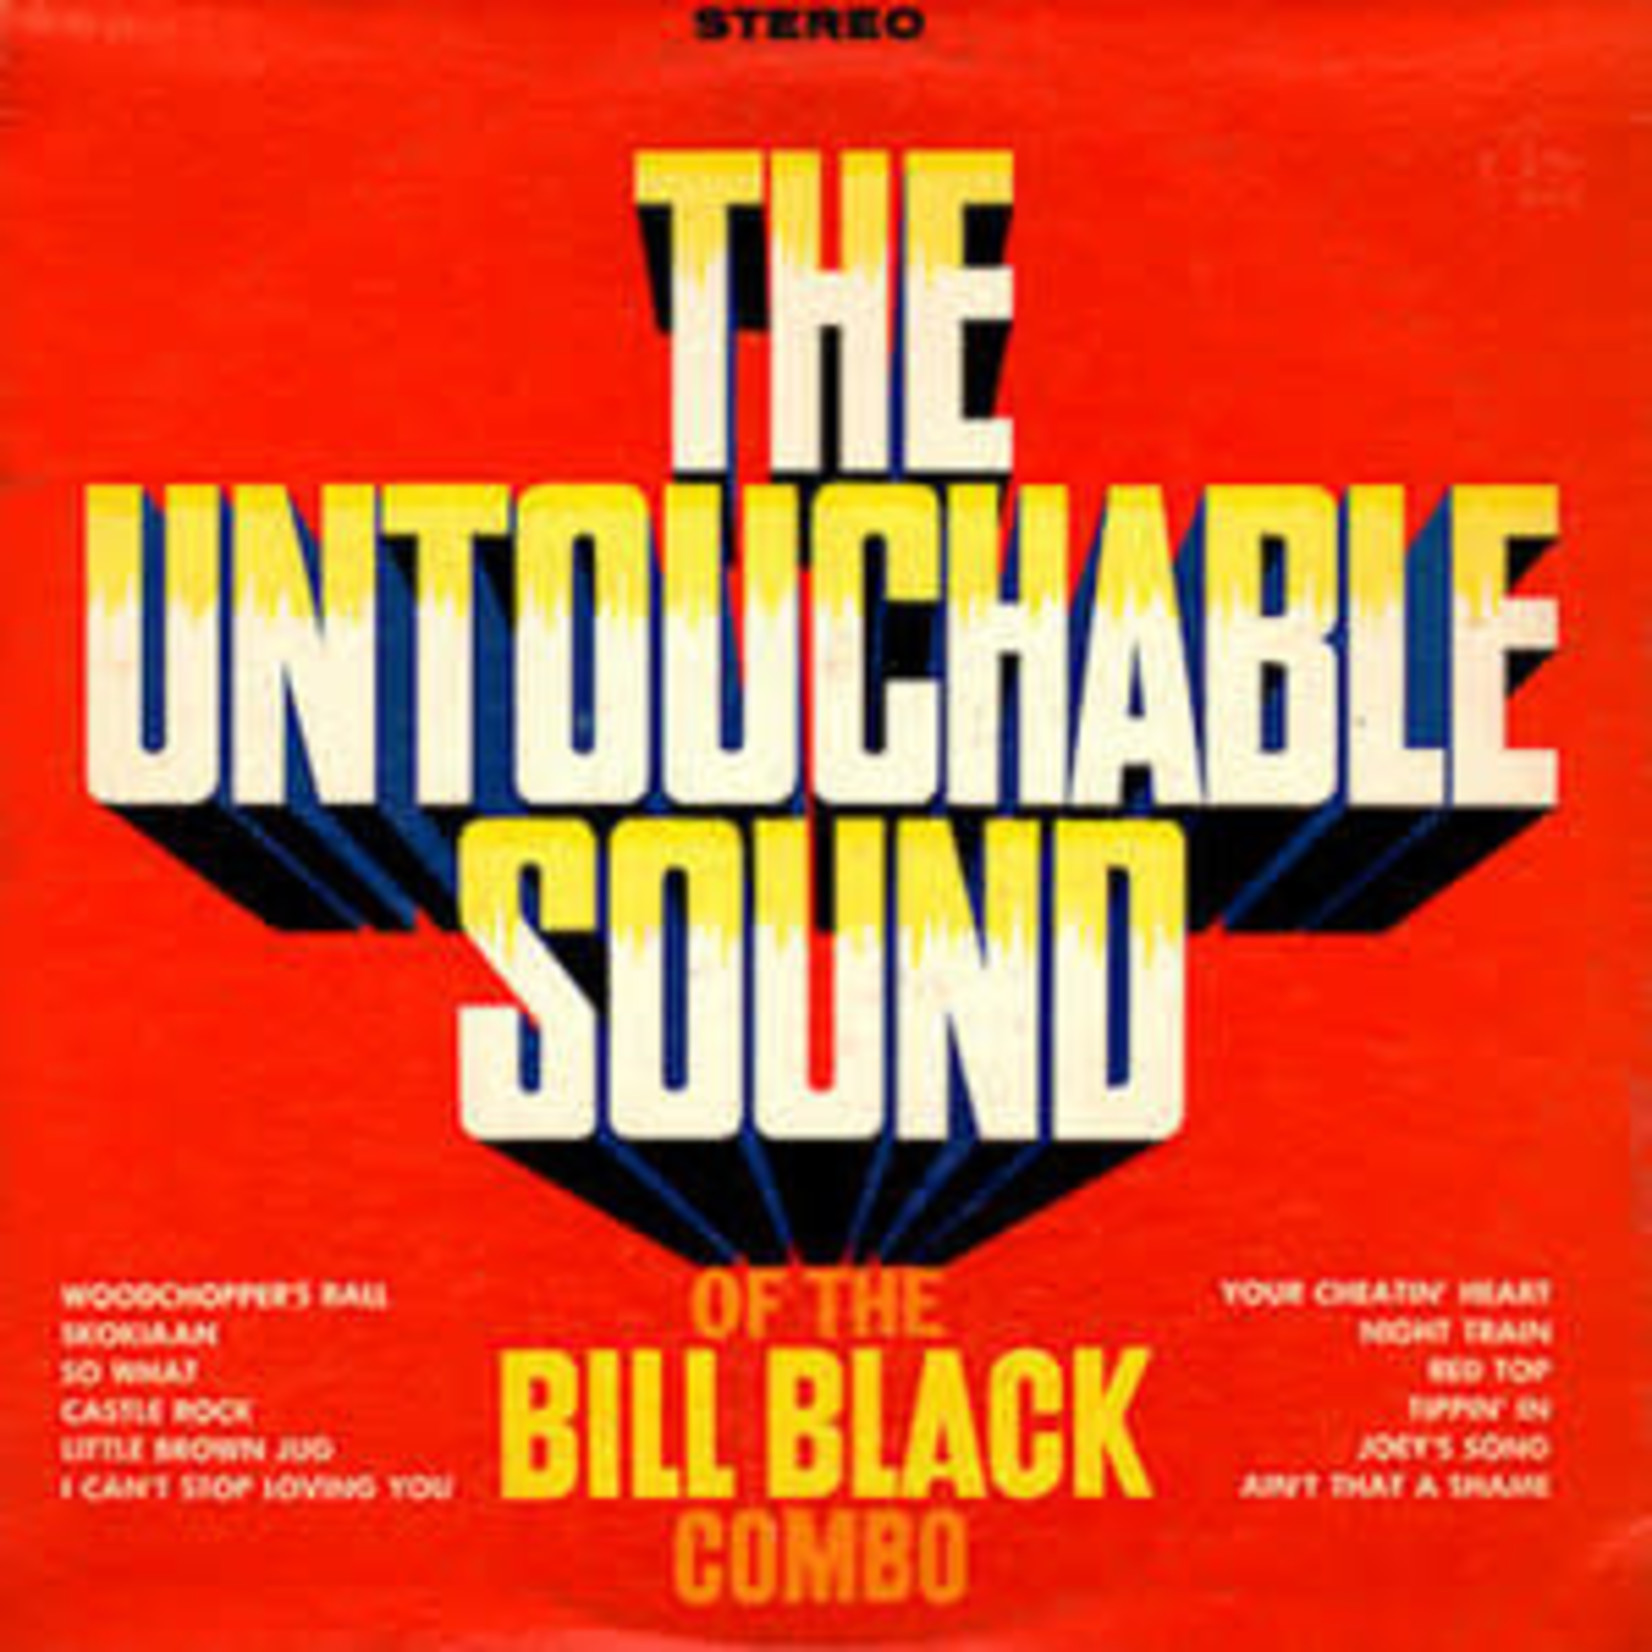 [Vintage] Bill Black Combo - The Untouchable Sound